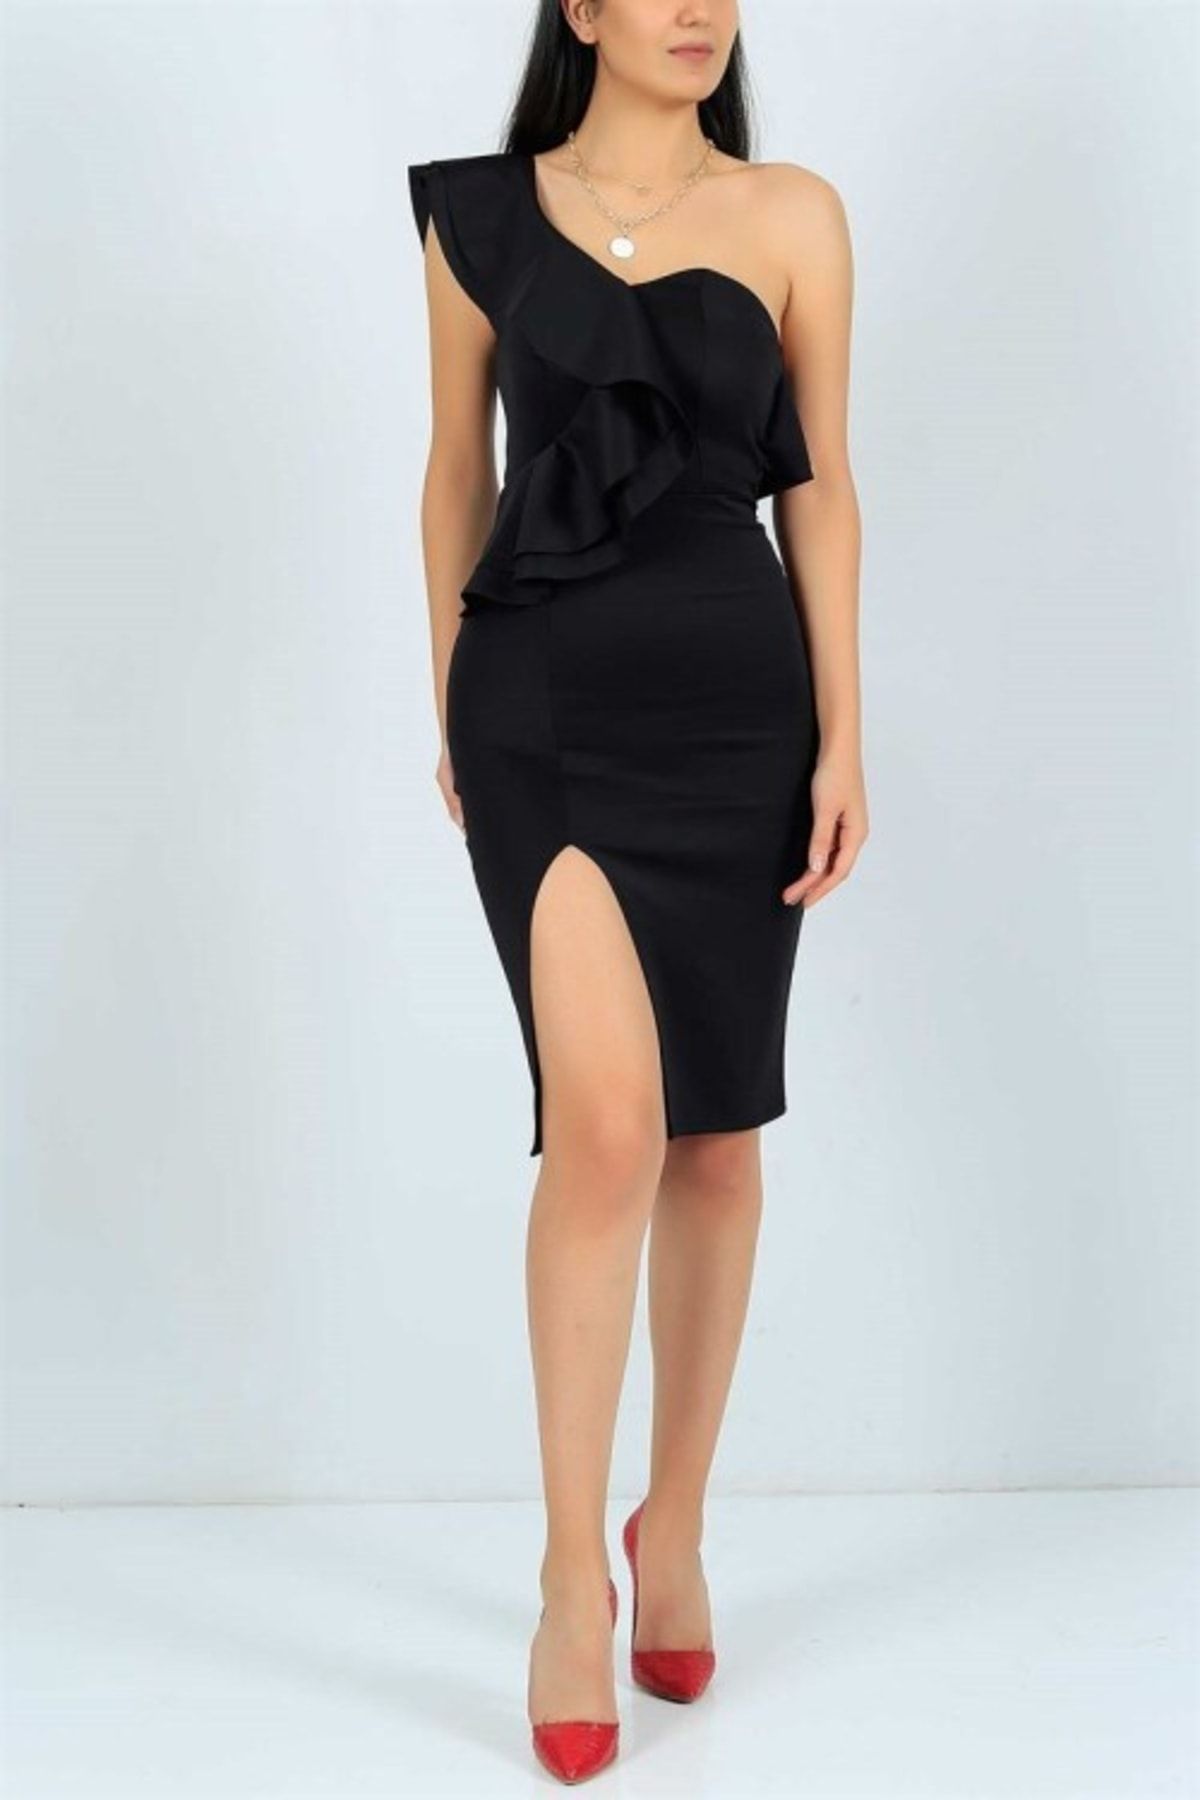 Secret Passion Lingerie Esnek Kumaş Tek Omuz Fırfır Ve Yırtmaç Detaylı Siyah Abiye Elbise Siyah Mezuniyet Elbisesi 019